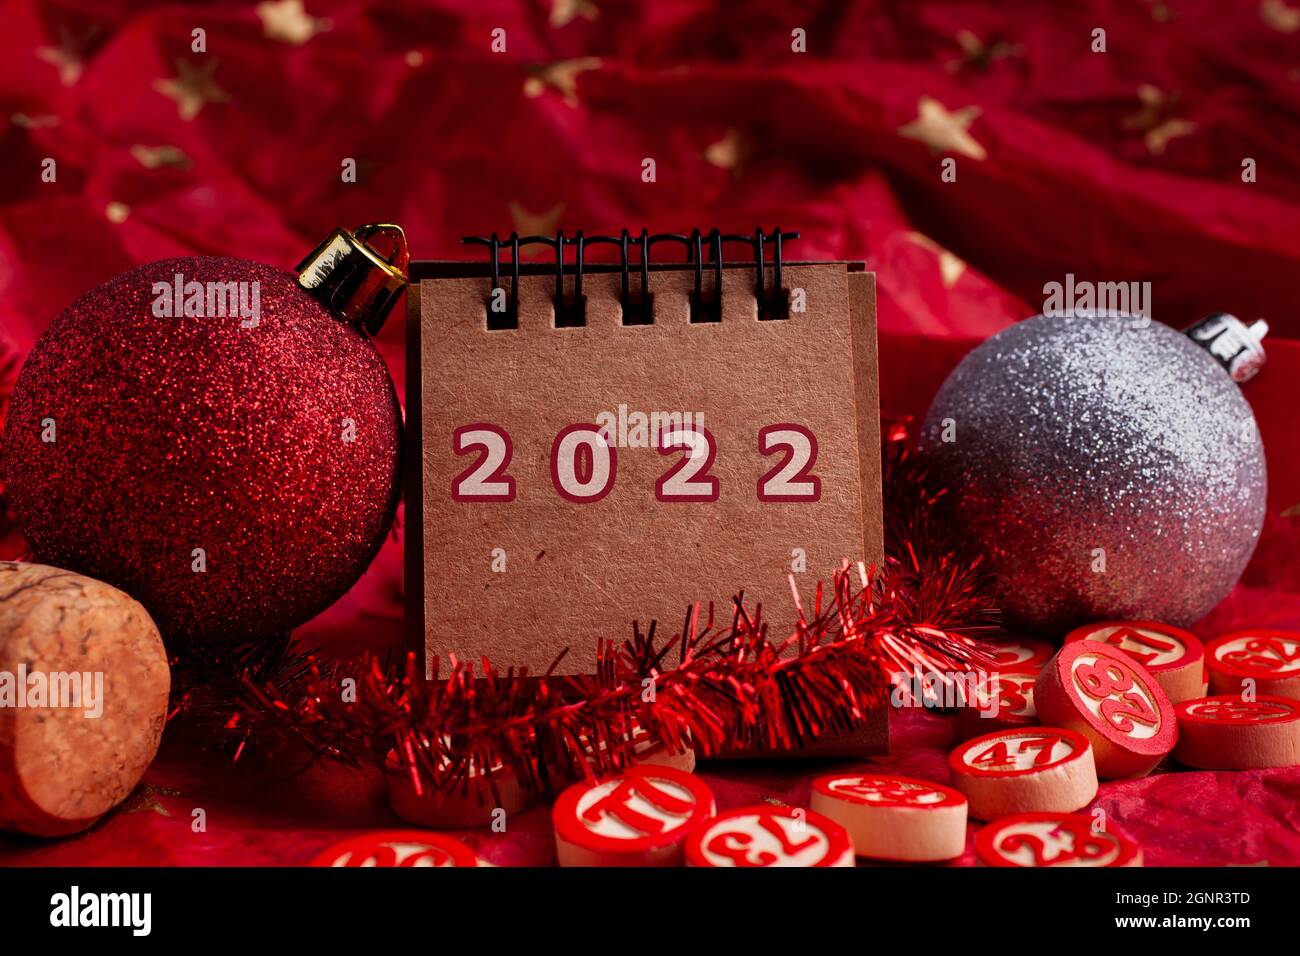 Lịch năm 2022 và trang trí Giáng sinh - Khái niệm Năm mới: Lịch năm 2022 và trang trí Giáng sinh là những khái niệm không thể thiếu trong mùa lễ hội. Với nhiều hình ảnh đẹp mắt và chất lượng, chiếc lịch sẽ giúp bạn dễ dàng lập kế hoạch và thưởng thức những giây phút đặc biệt của mùa Giáng sinh và Năm mới.